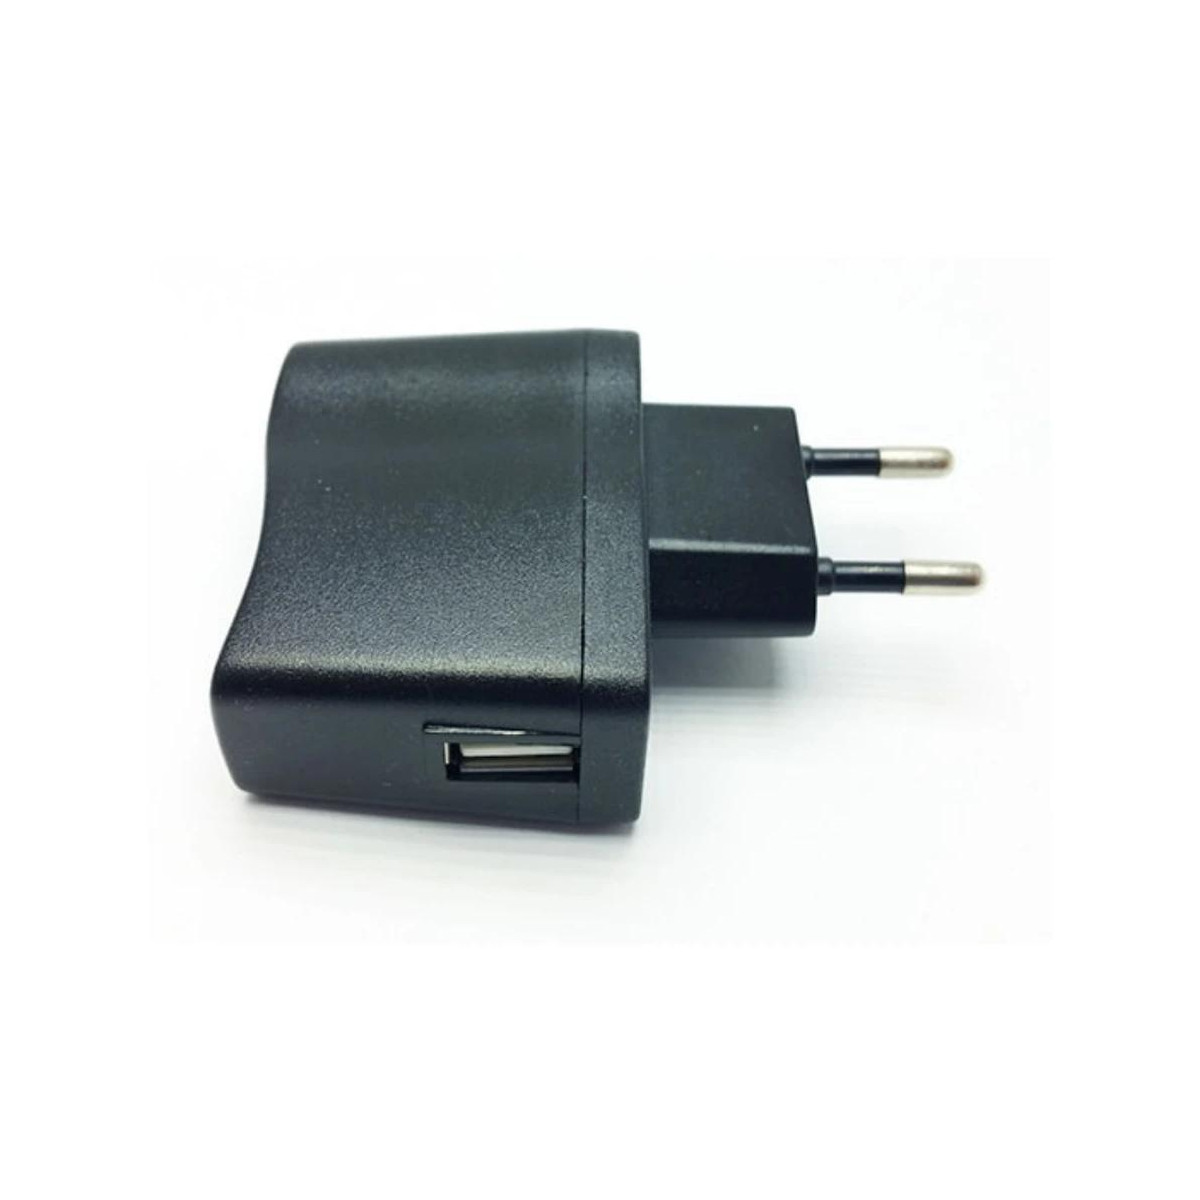 Univerzální 5V adaptér pro USB kabely